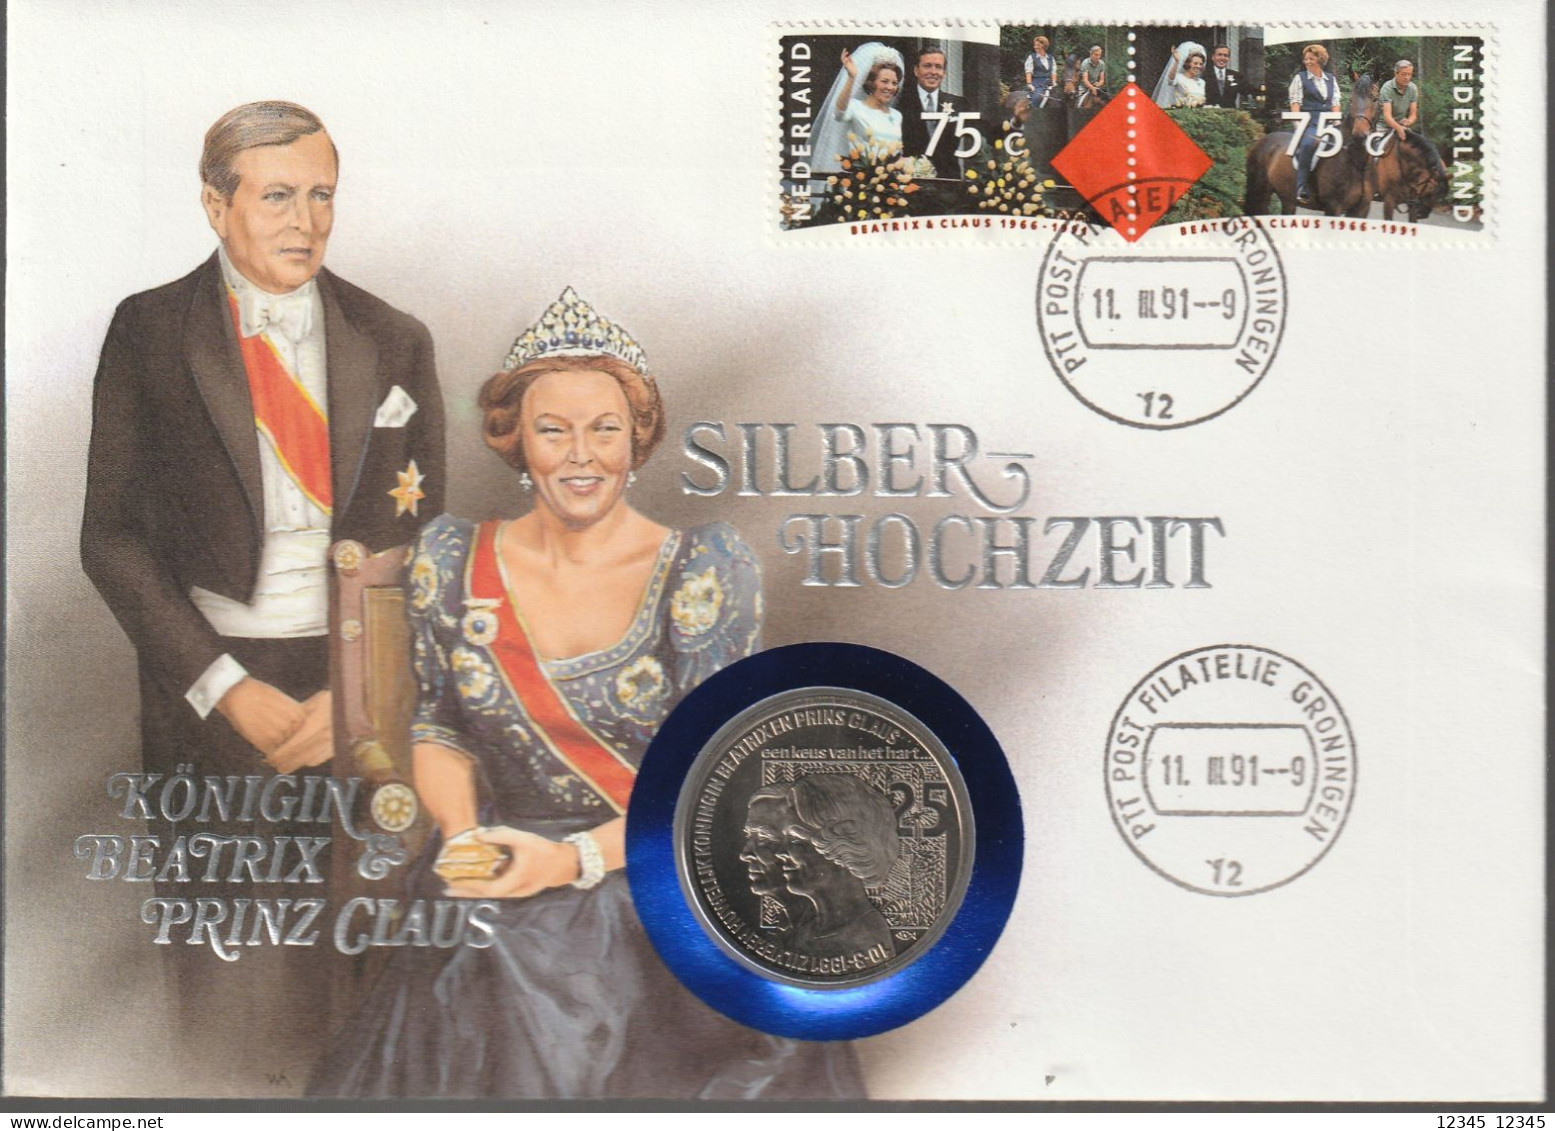 1991, Coincard, Königin Beatrix & Prinz Claus, Silberhochzeit - Enveloppes Numismatiques